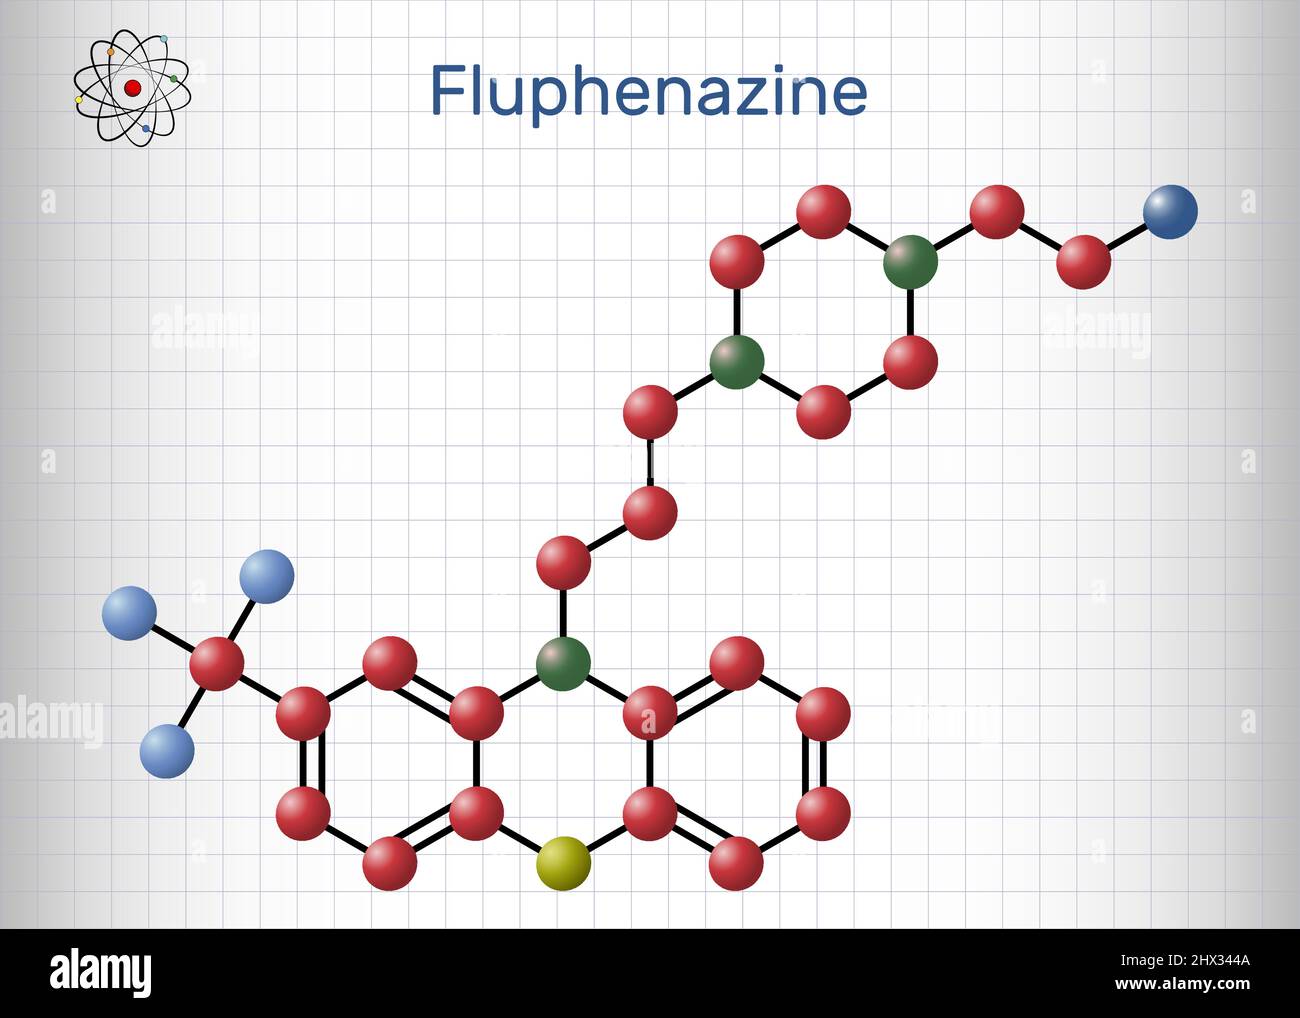 Fluphenazin-Molekül. Es ist ein Phenothiazin, ein neuroleptisches, antipsychotisches Medikament, das in der Behandlung von Psychosen verwendet wird. Molekülmodell. Blatt von p Stock Vektor